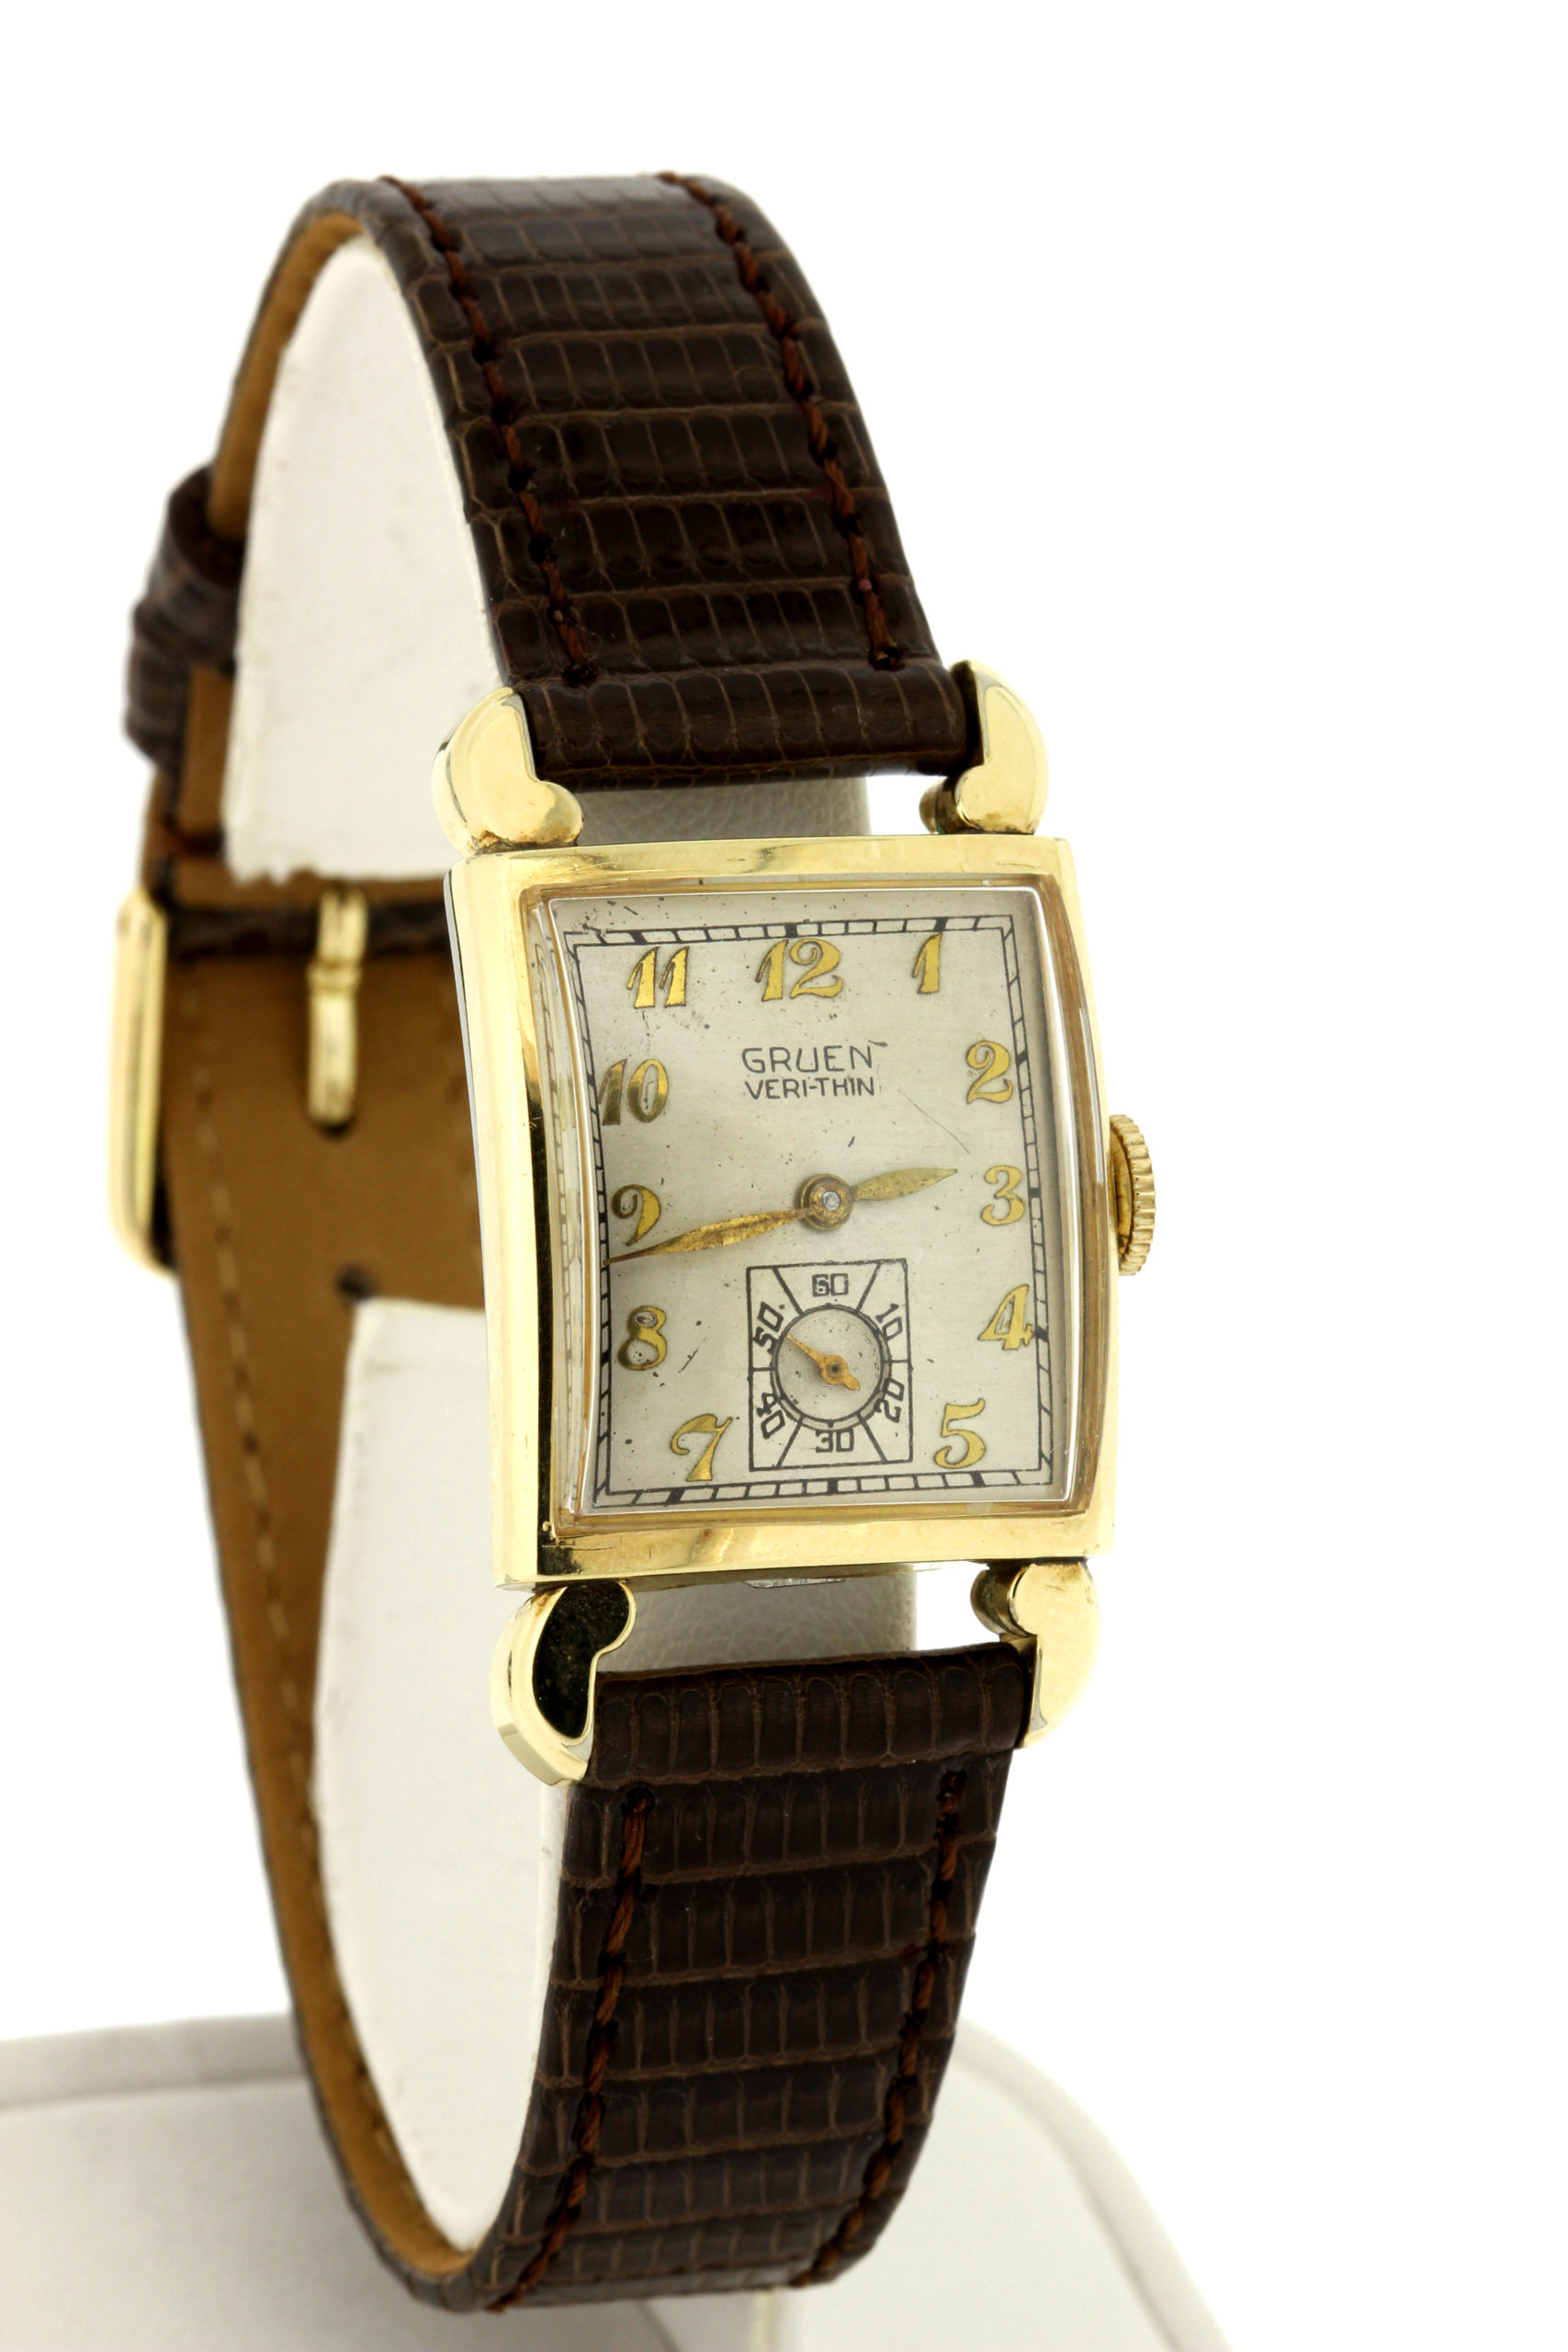 Gruen Veri-thin gold-filled Wrist Watch - Timekeepersclayton